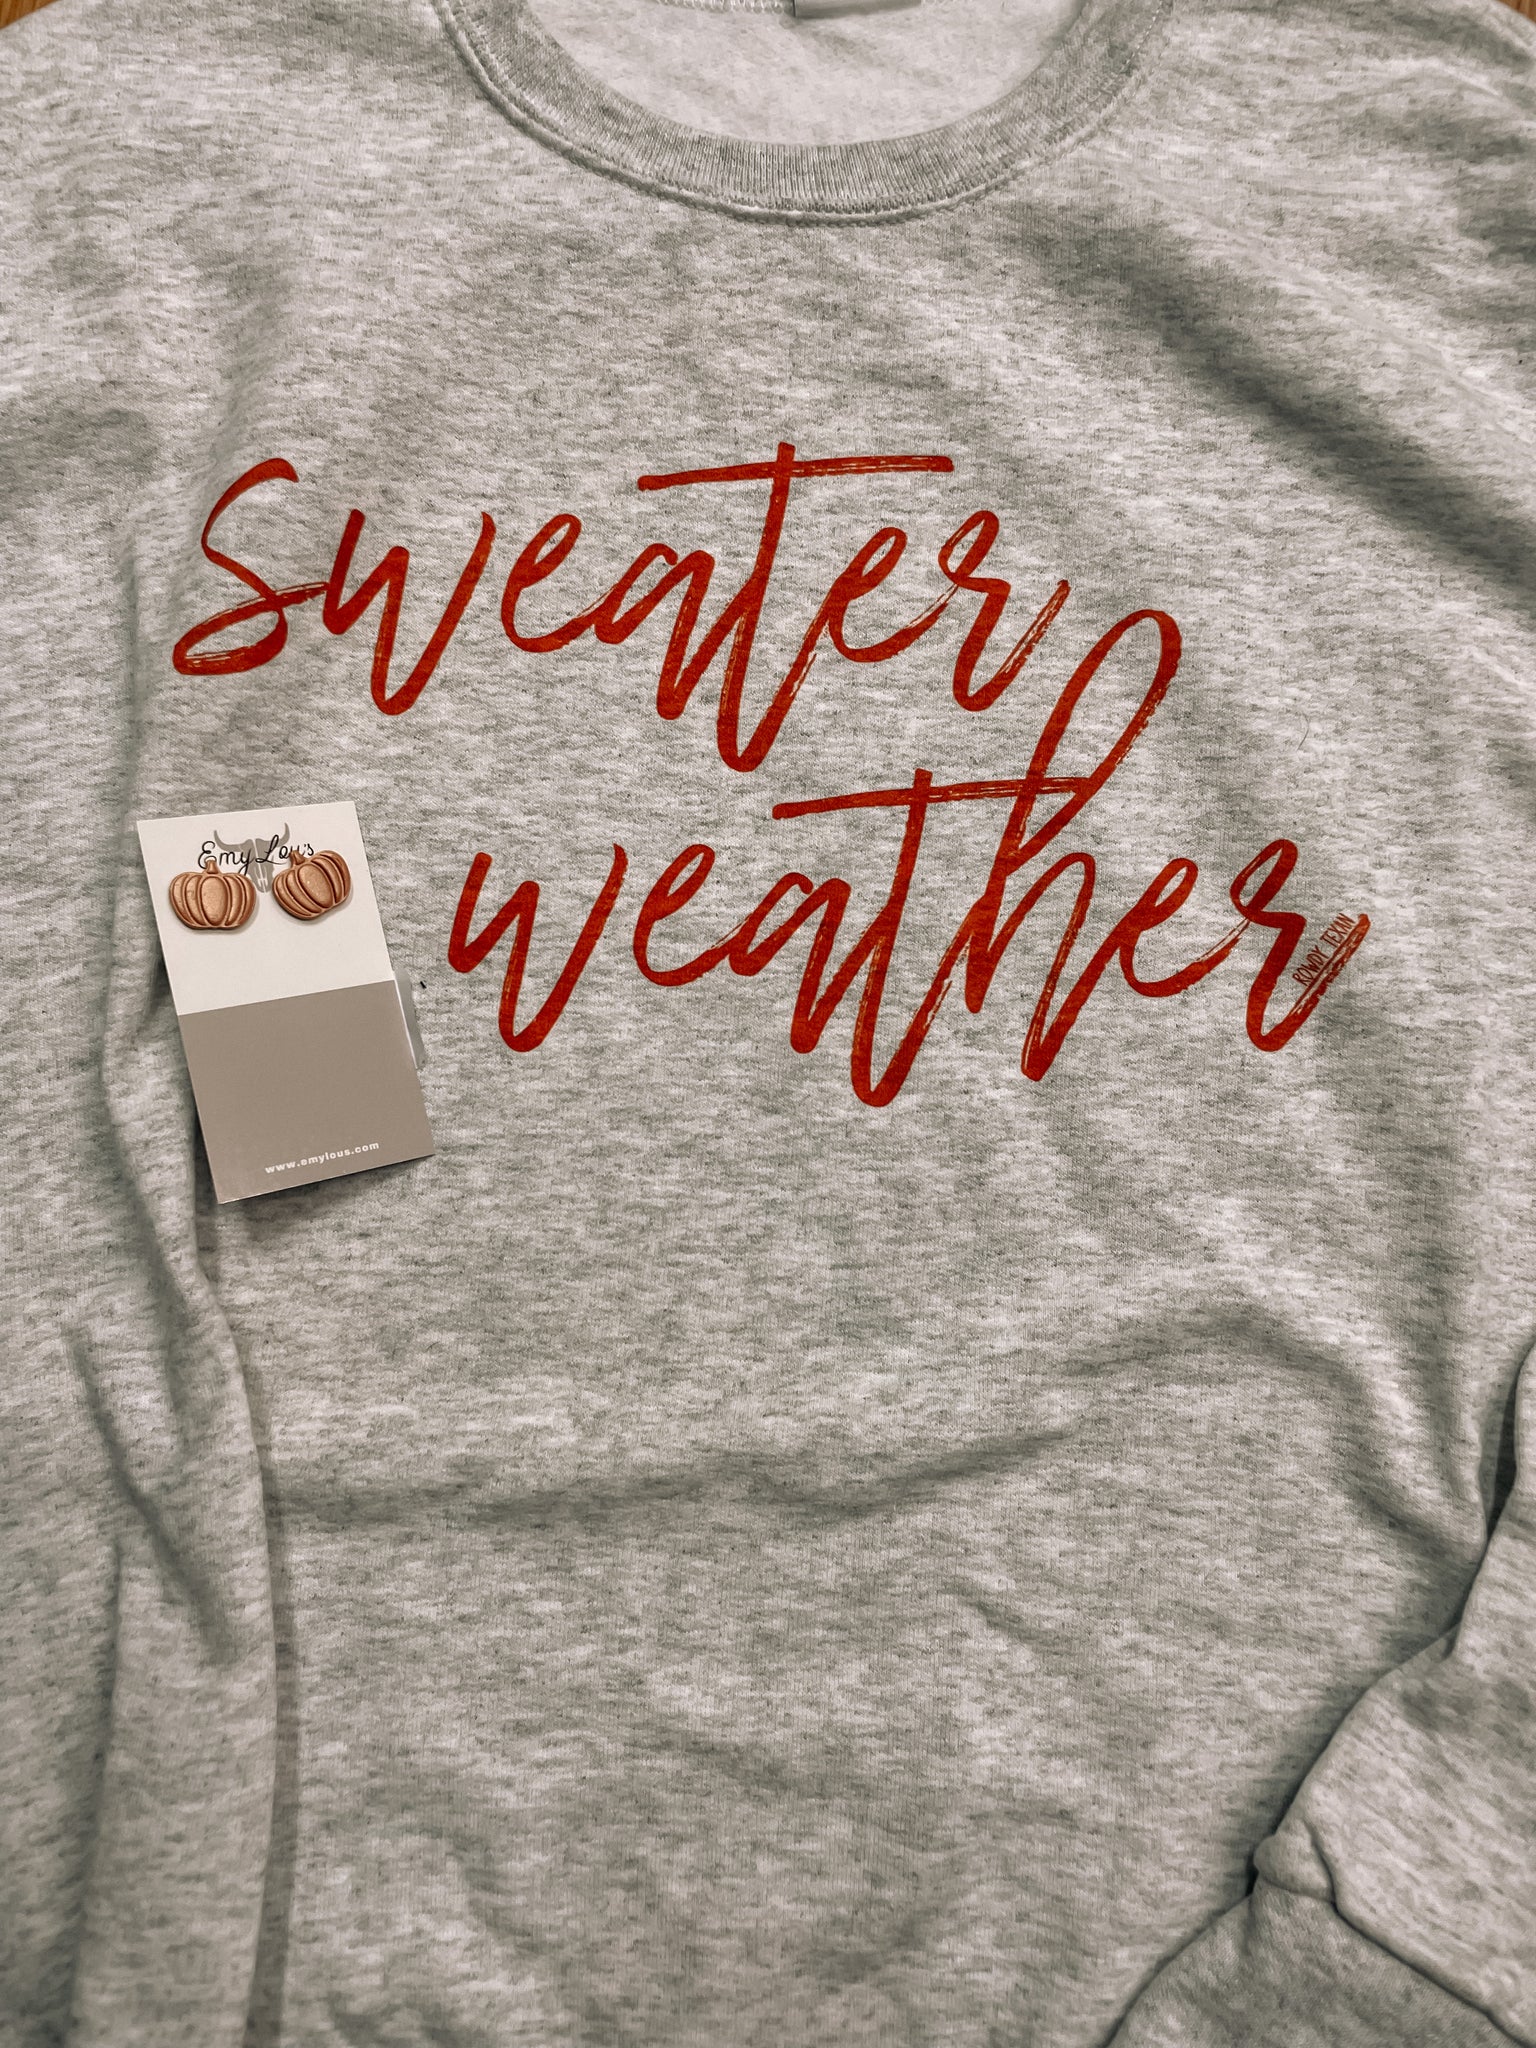 Sweater Weather Crew Neck